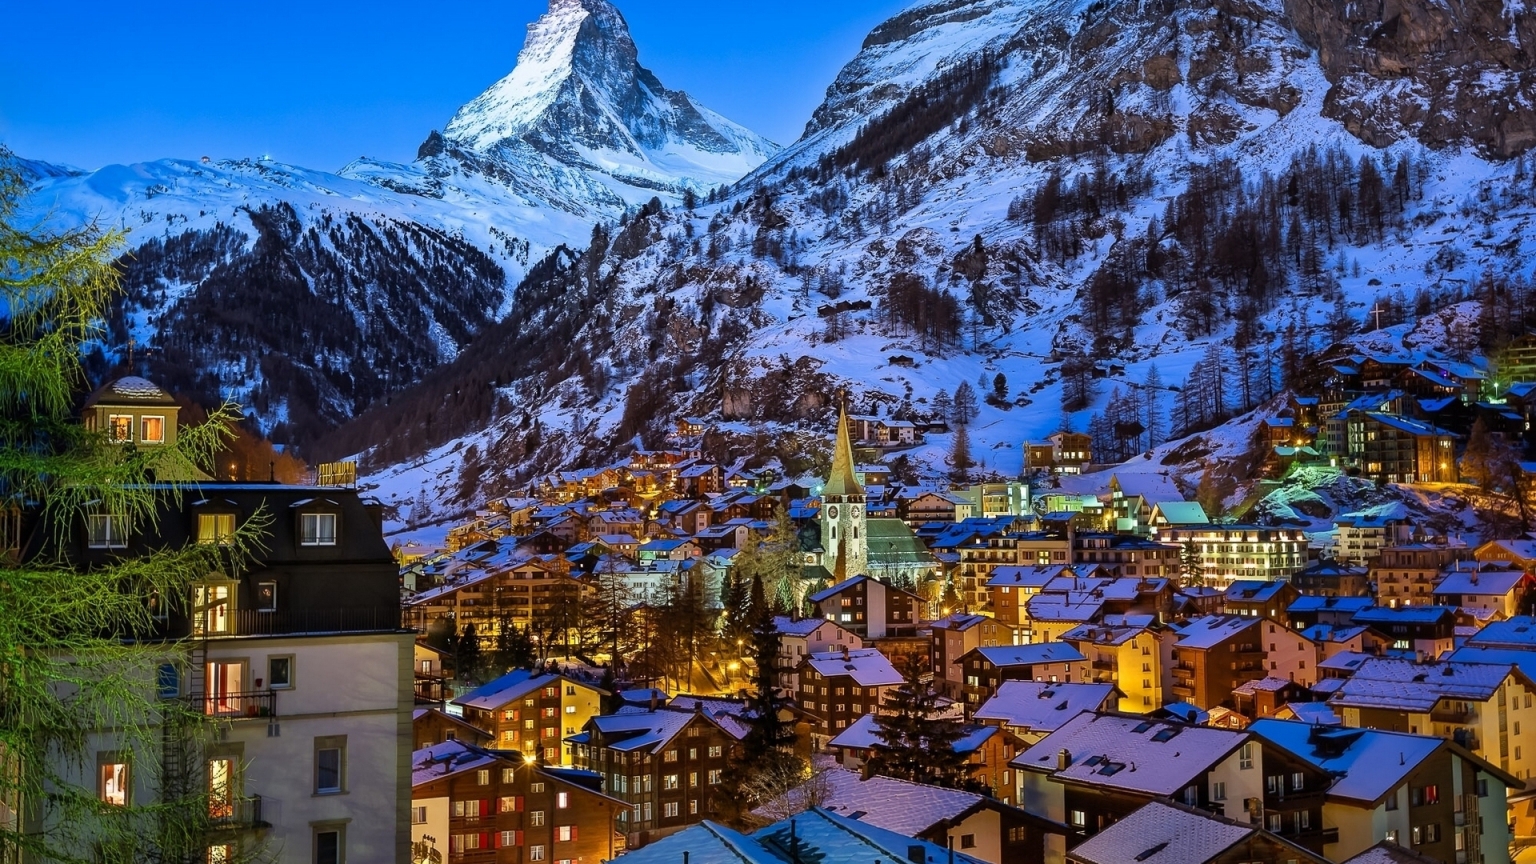 Zermatt Valley Switzerland for 1536 x 864 HDTV resolution